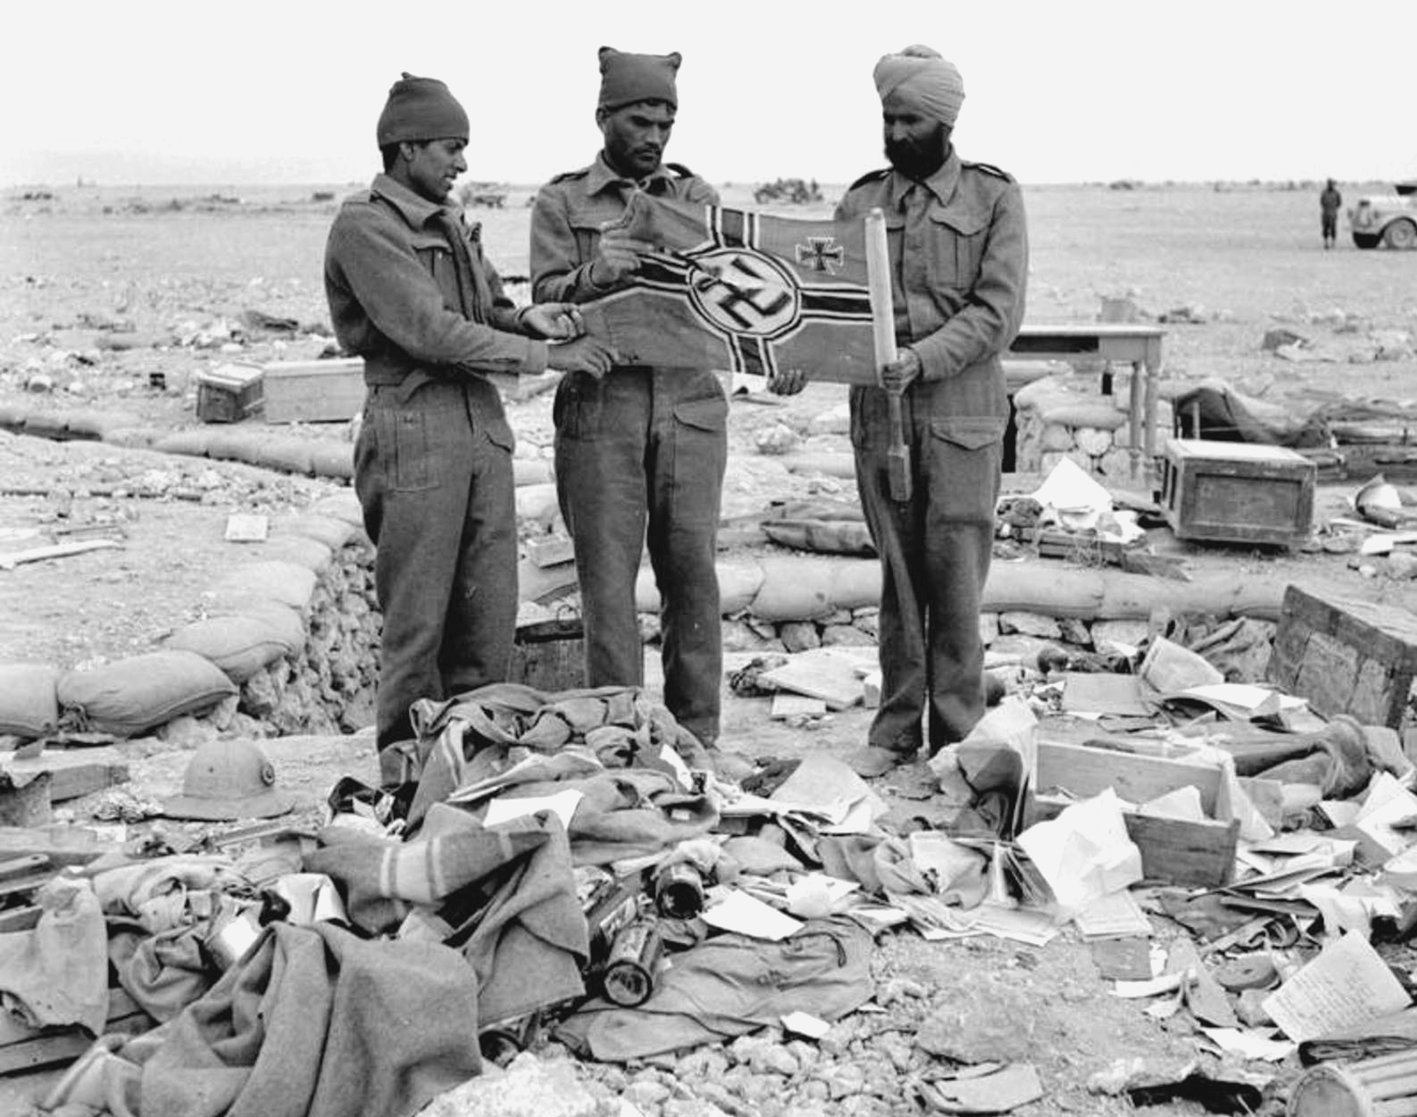 Fotografia em preto e branco. Três soldados em meio a escombros. Dois usam gorro e um usa um turbante na cabeça. Seguram nas mãos uma bandeira nazista.